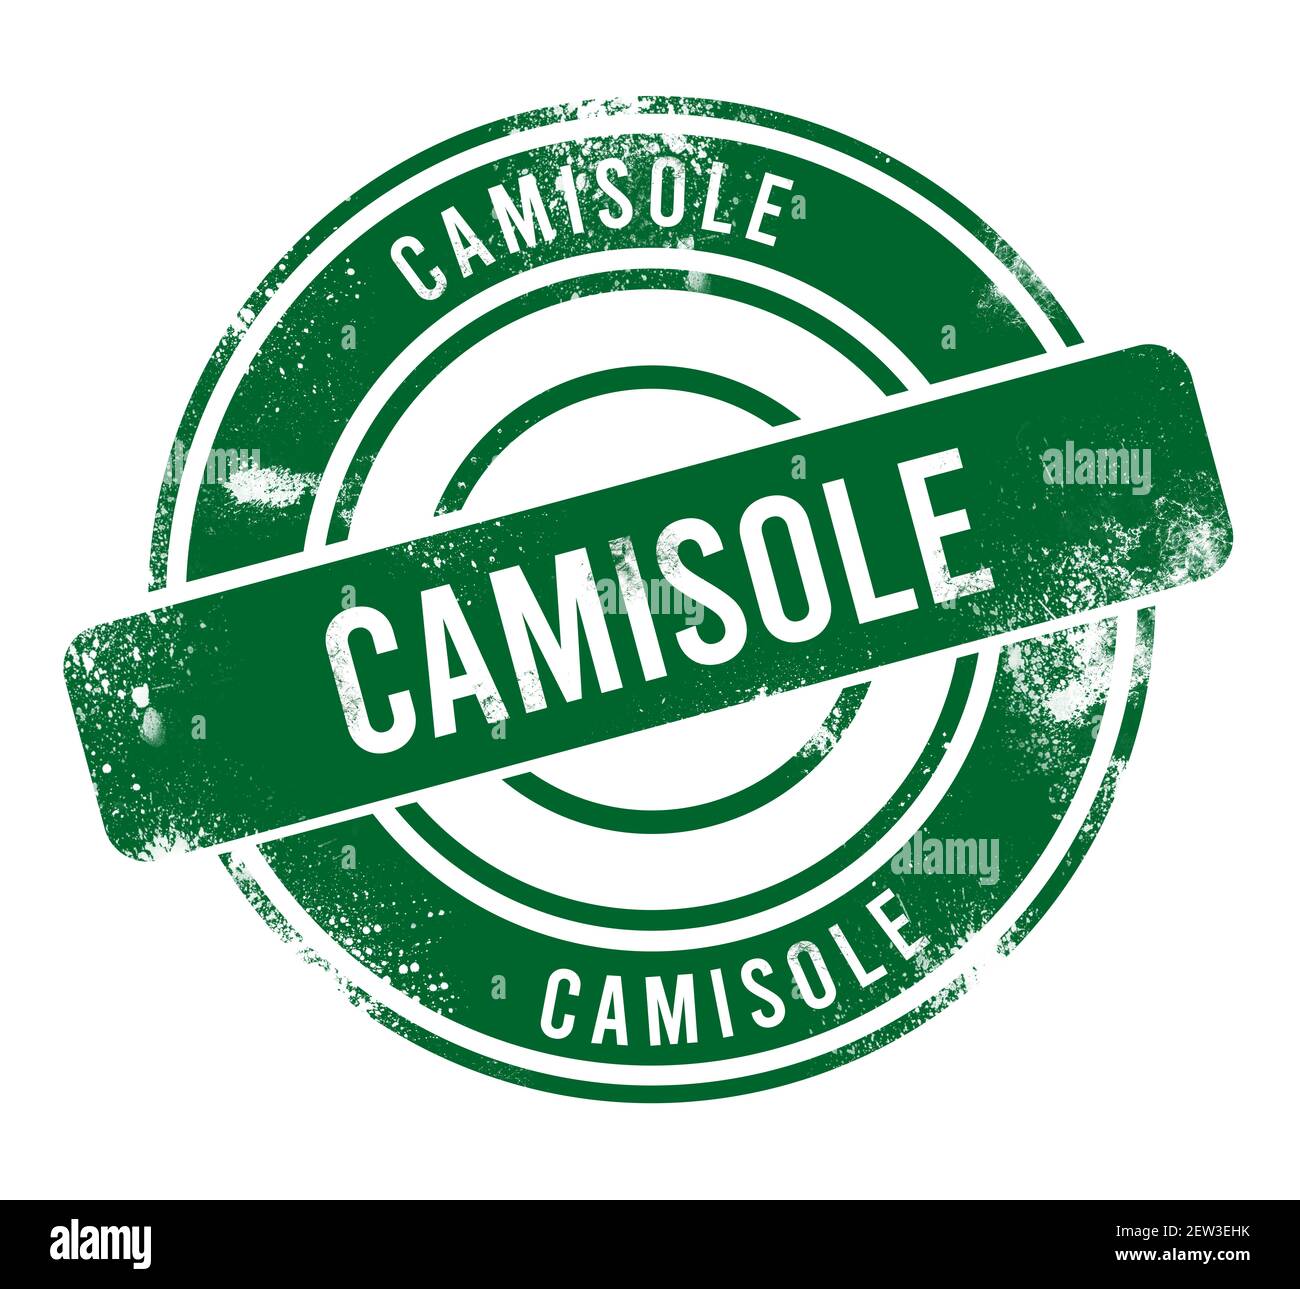 camisole - green round grunge button, stamp Stock Photo